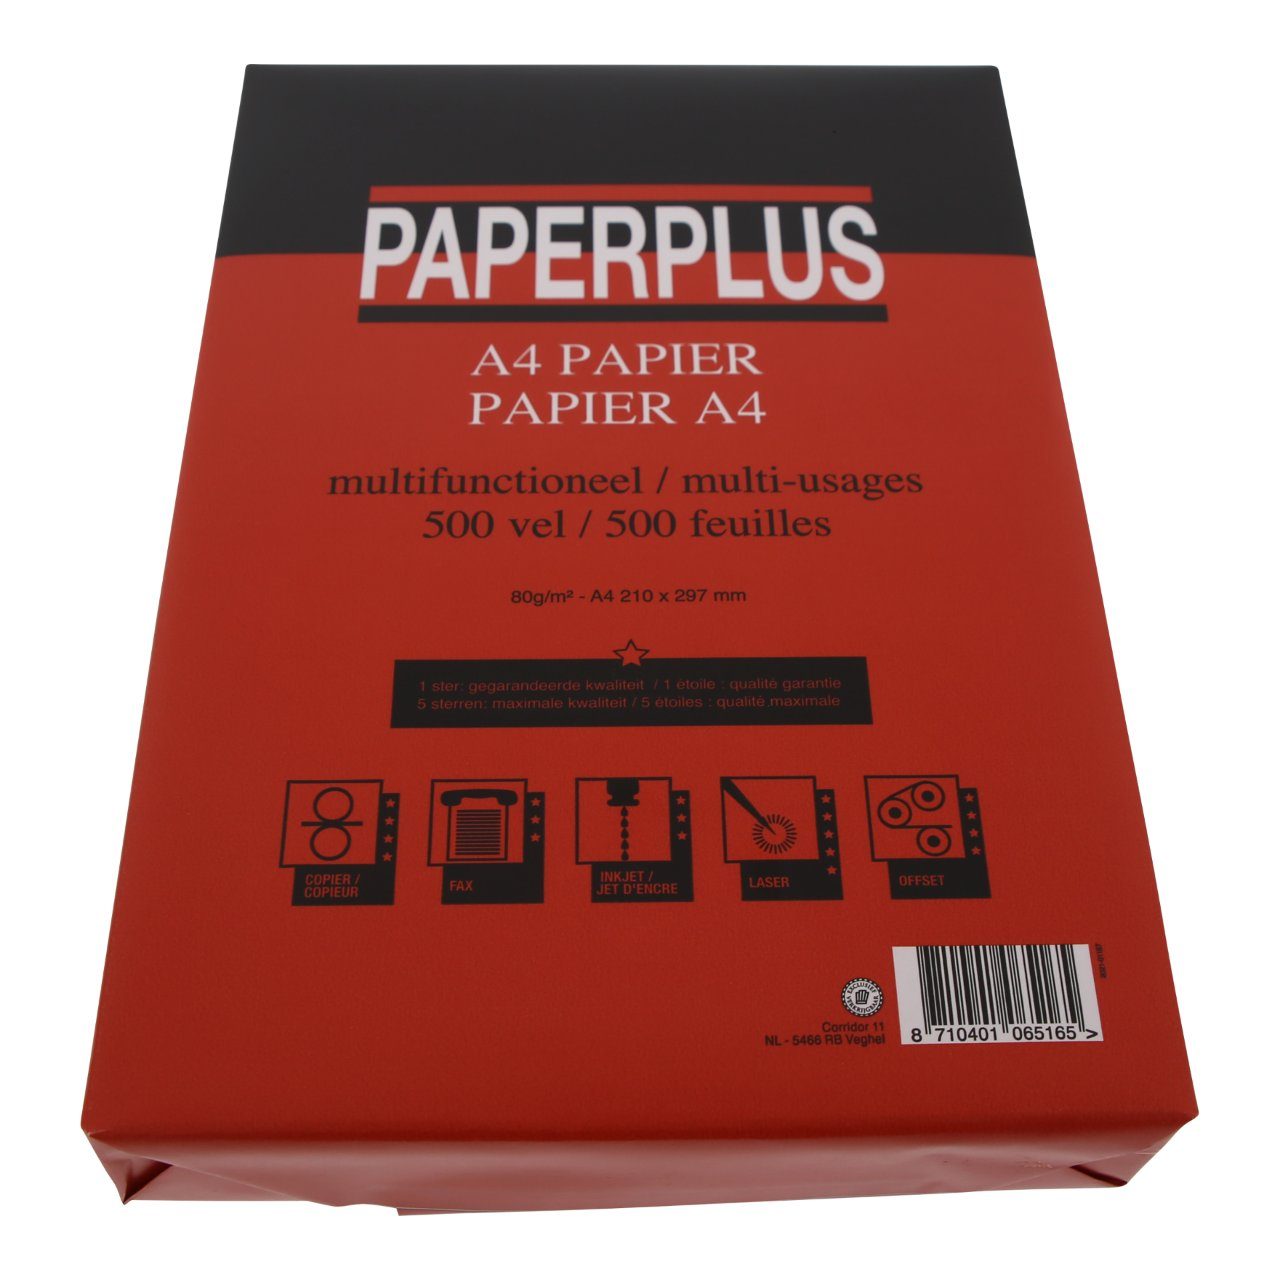 Paperplus Multifunctioneel papier Pak 500 stuks | dekweker.nl